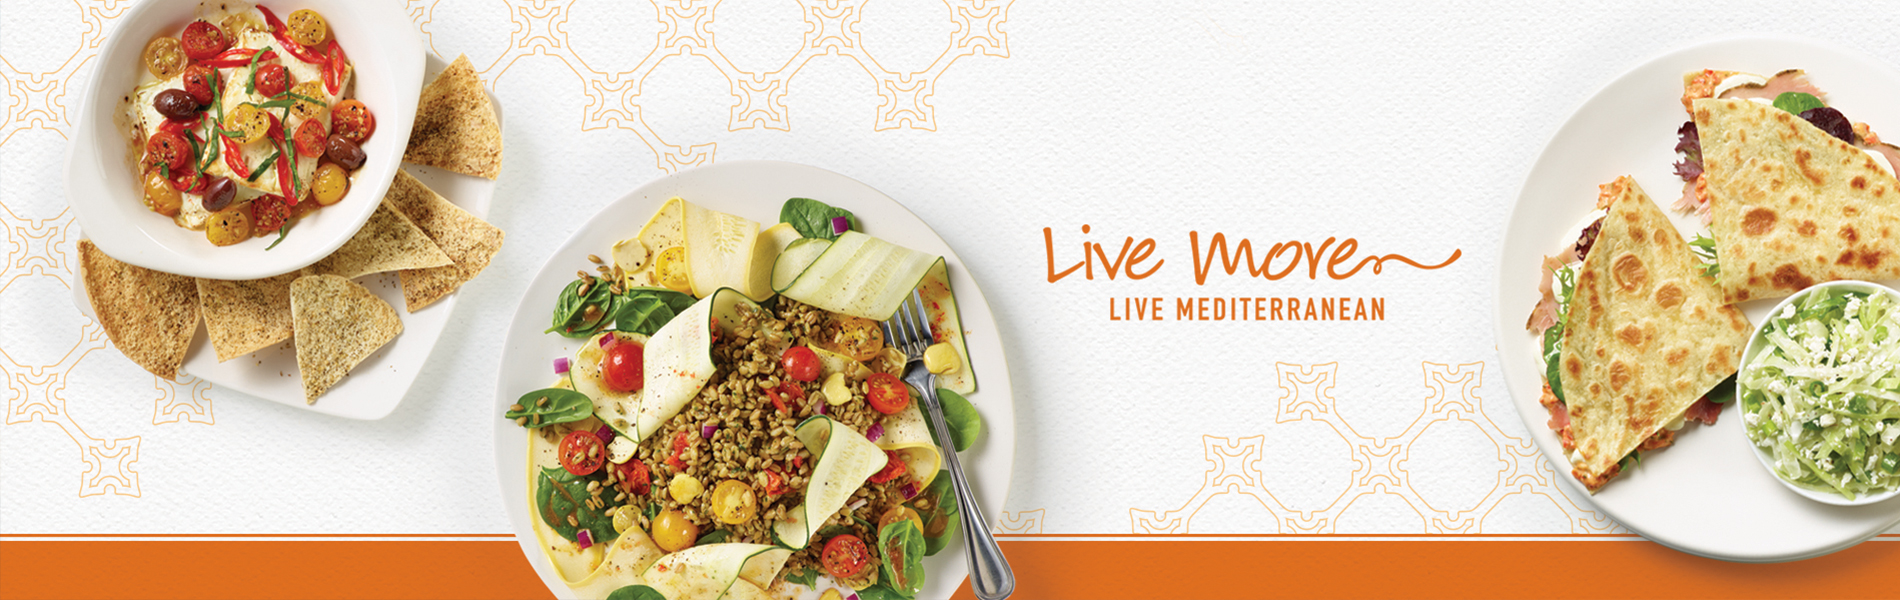 Zos Kitchen Shares Four New Ways To Live More Mediterranean